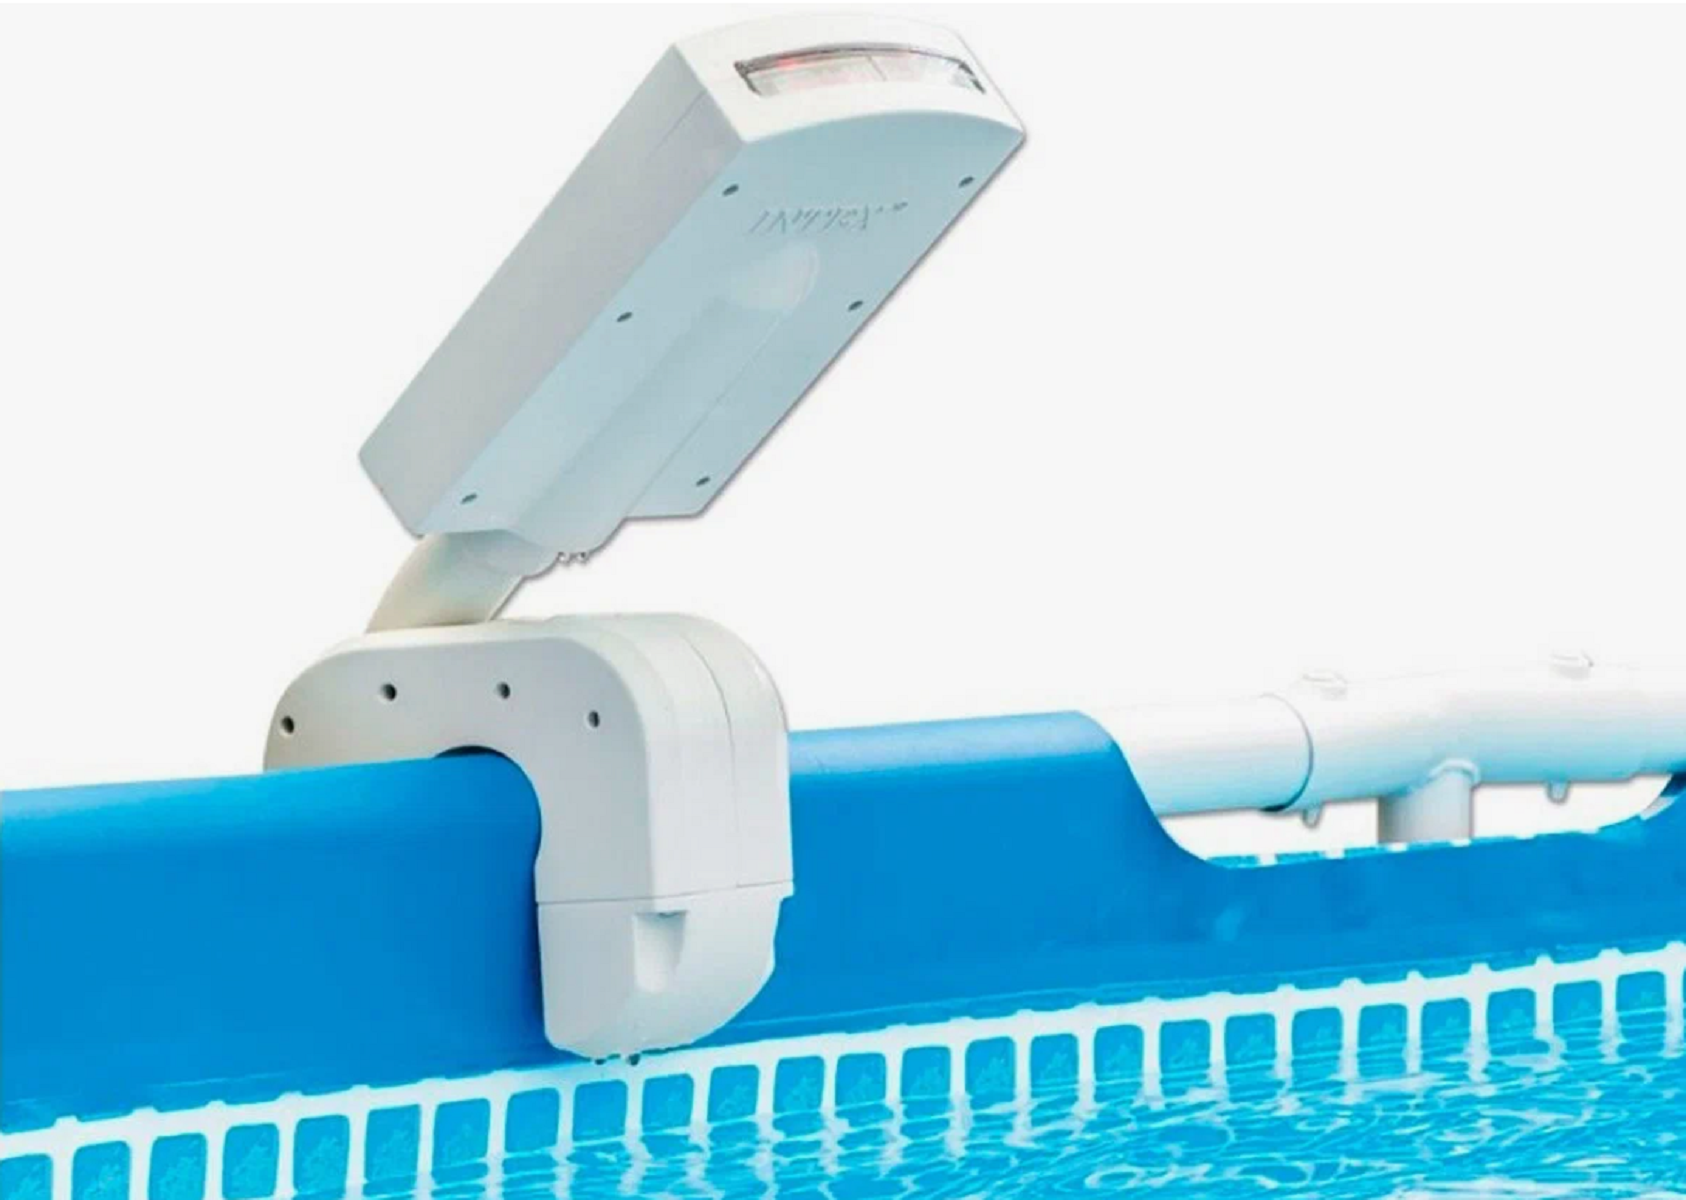 Фонтан для бассейна с LED подсветкой Multi-Color LED Pool Sprayer, рассеиватель intex 28089